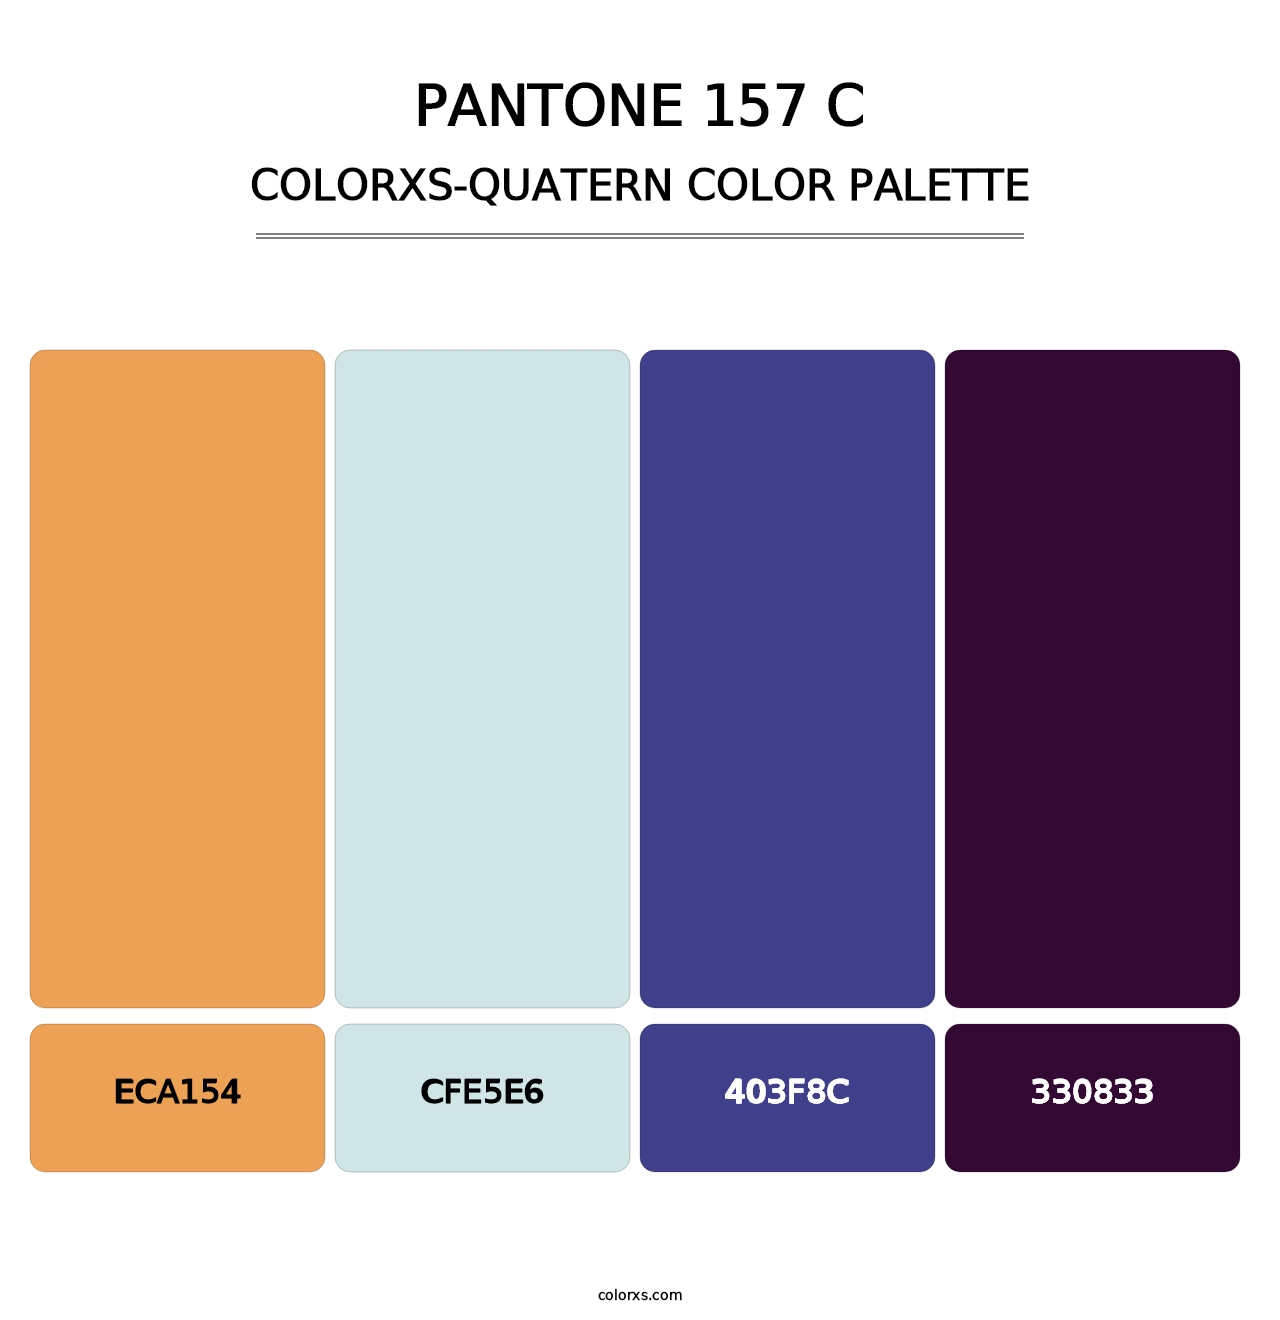 PANTONE 157 C - Colorxs Quatern Palette